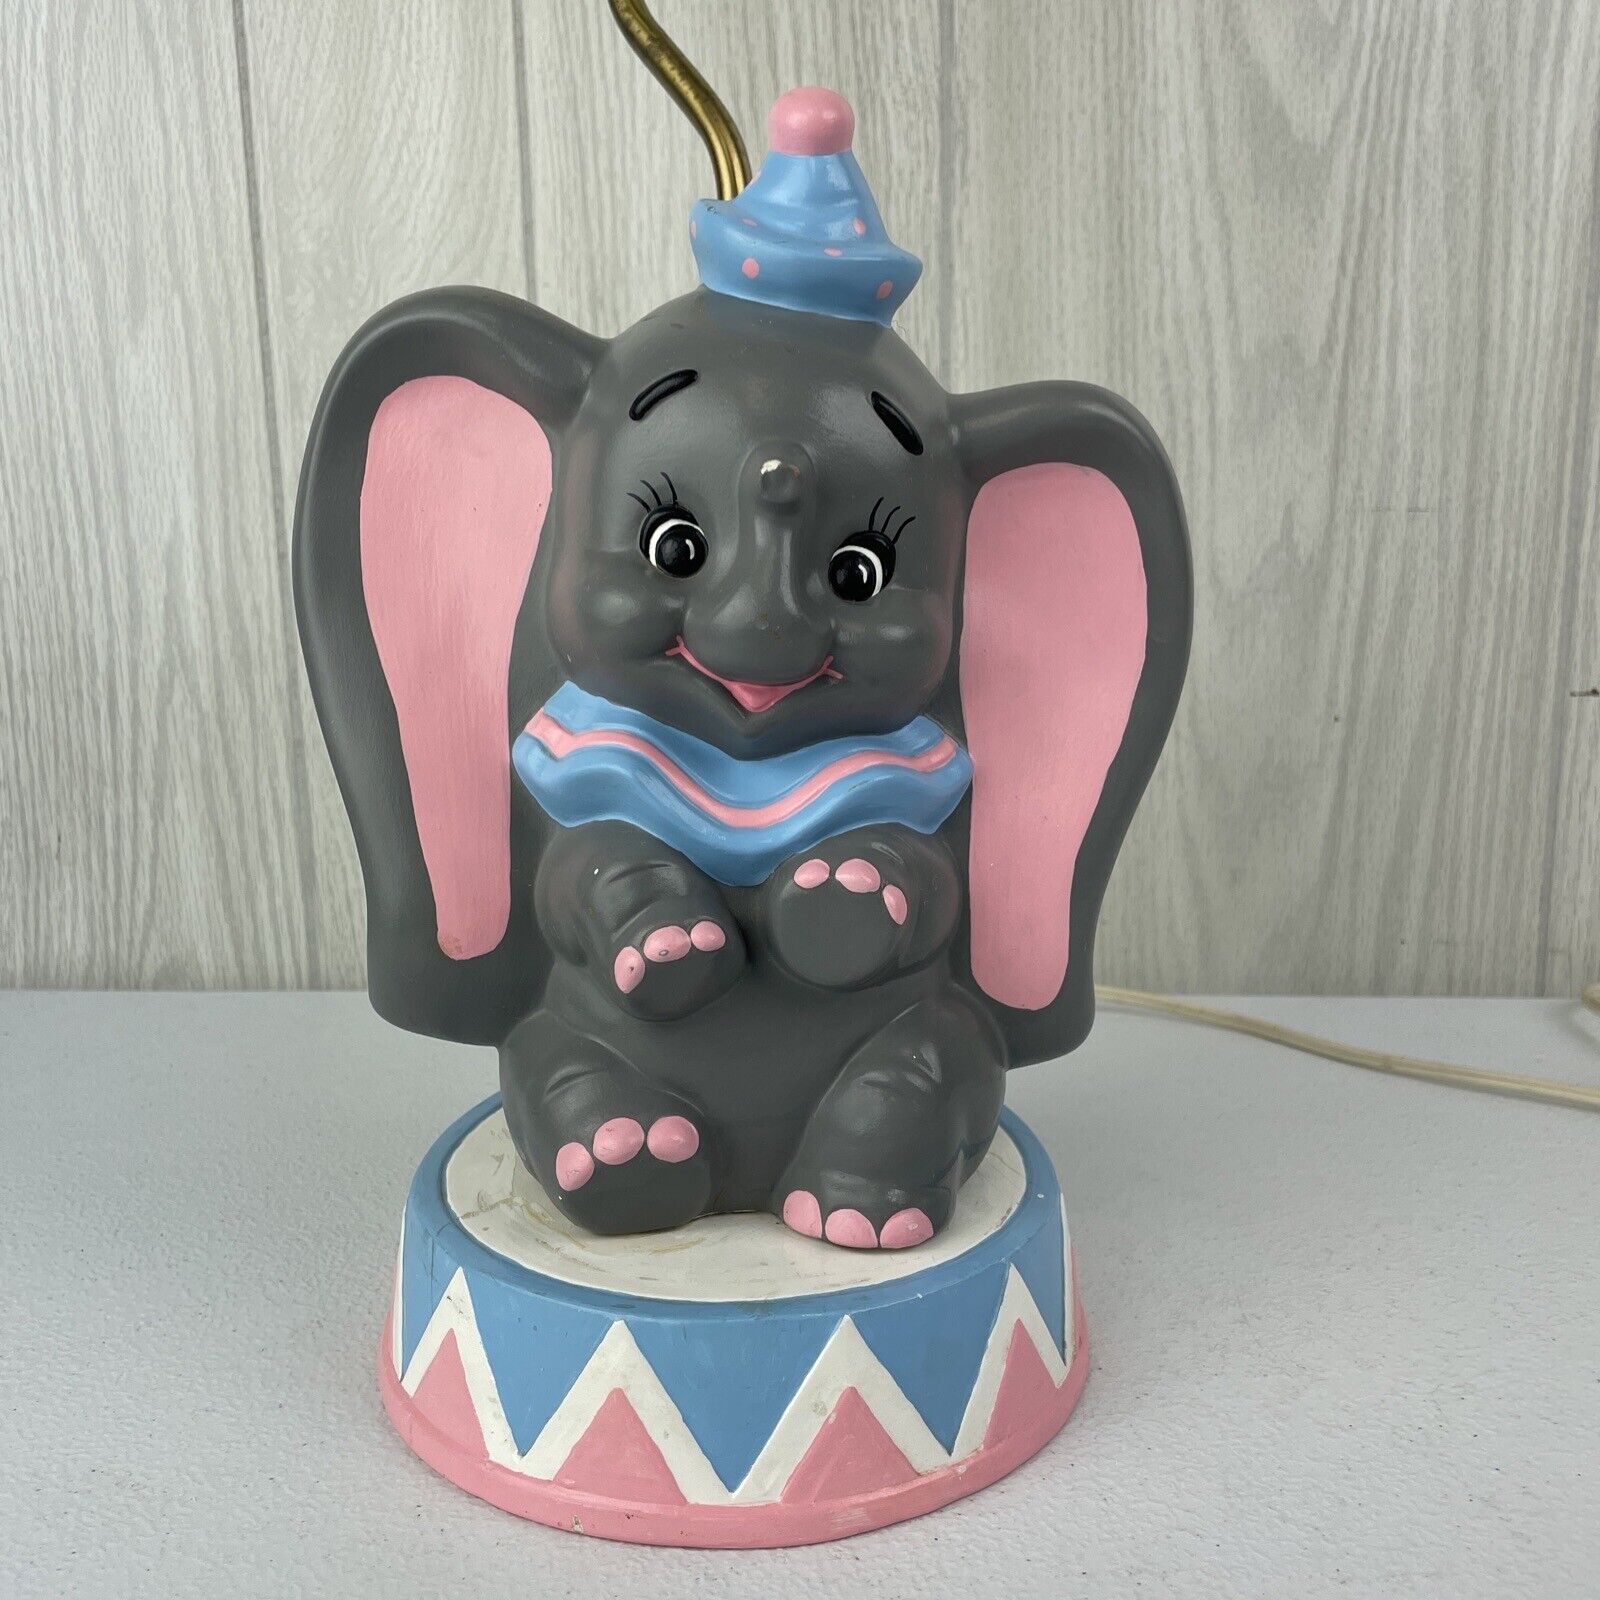 VTG RARE 1974 Disney Dumbo Elephant Ceramic Table Lamp Light 16